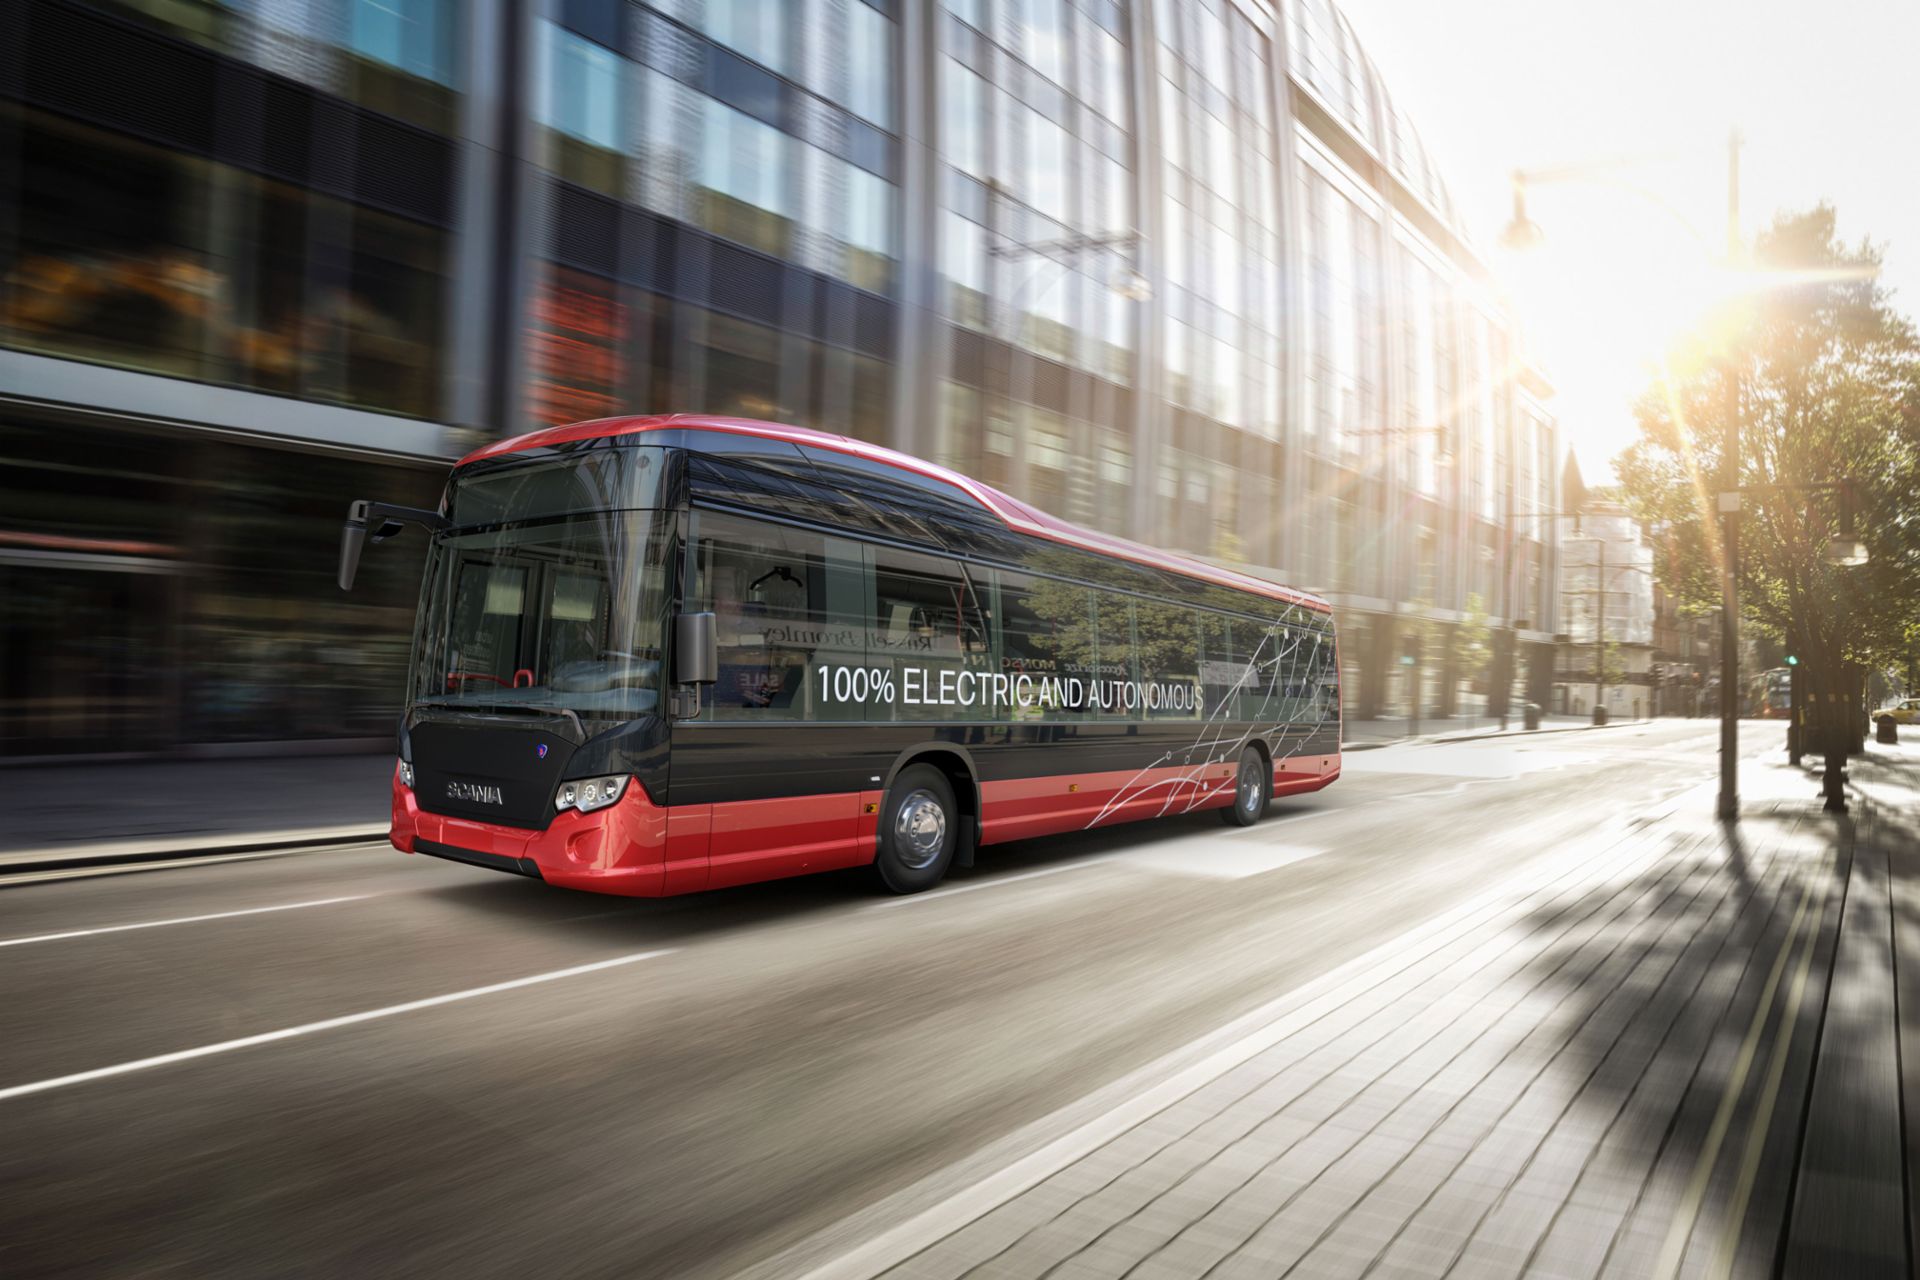 Scania e-mobility bus